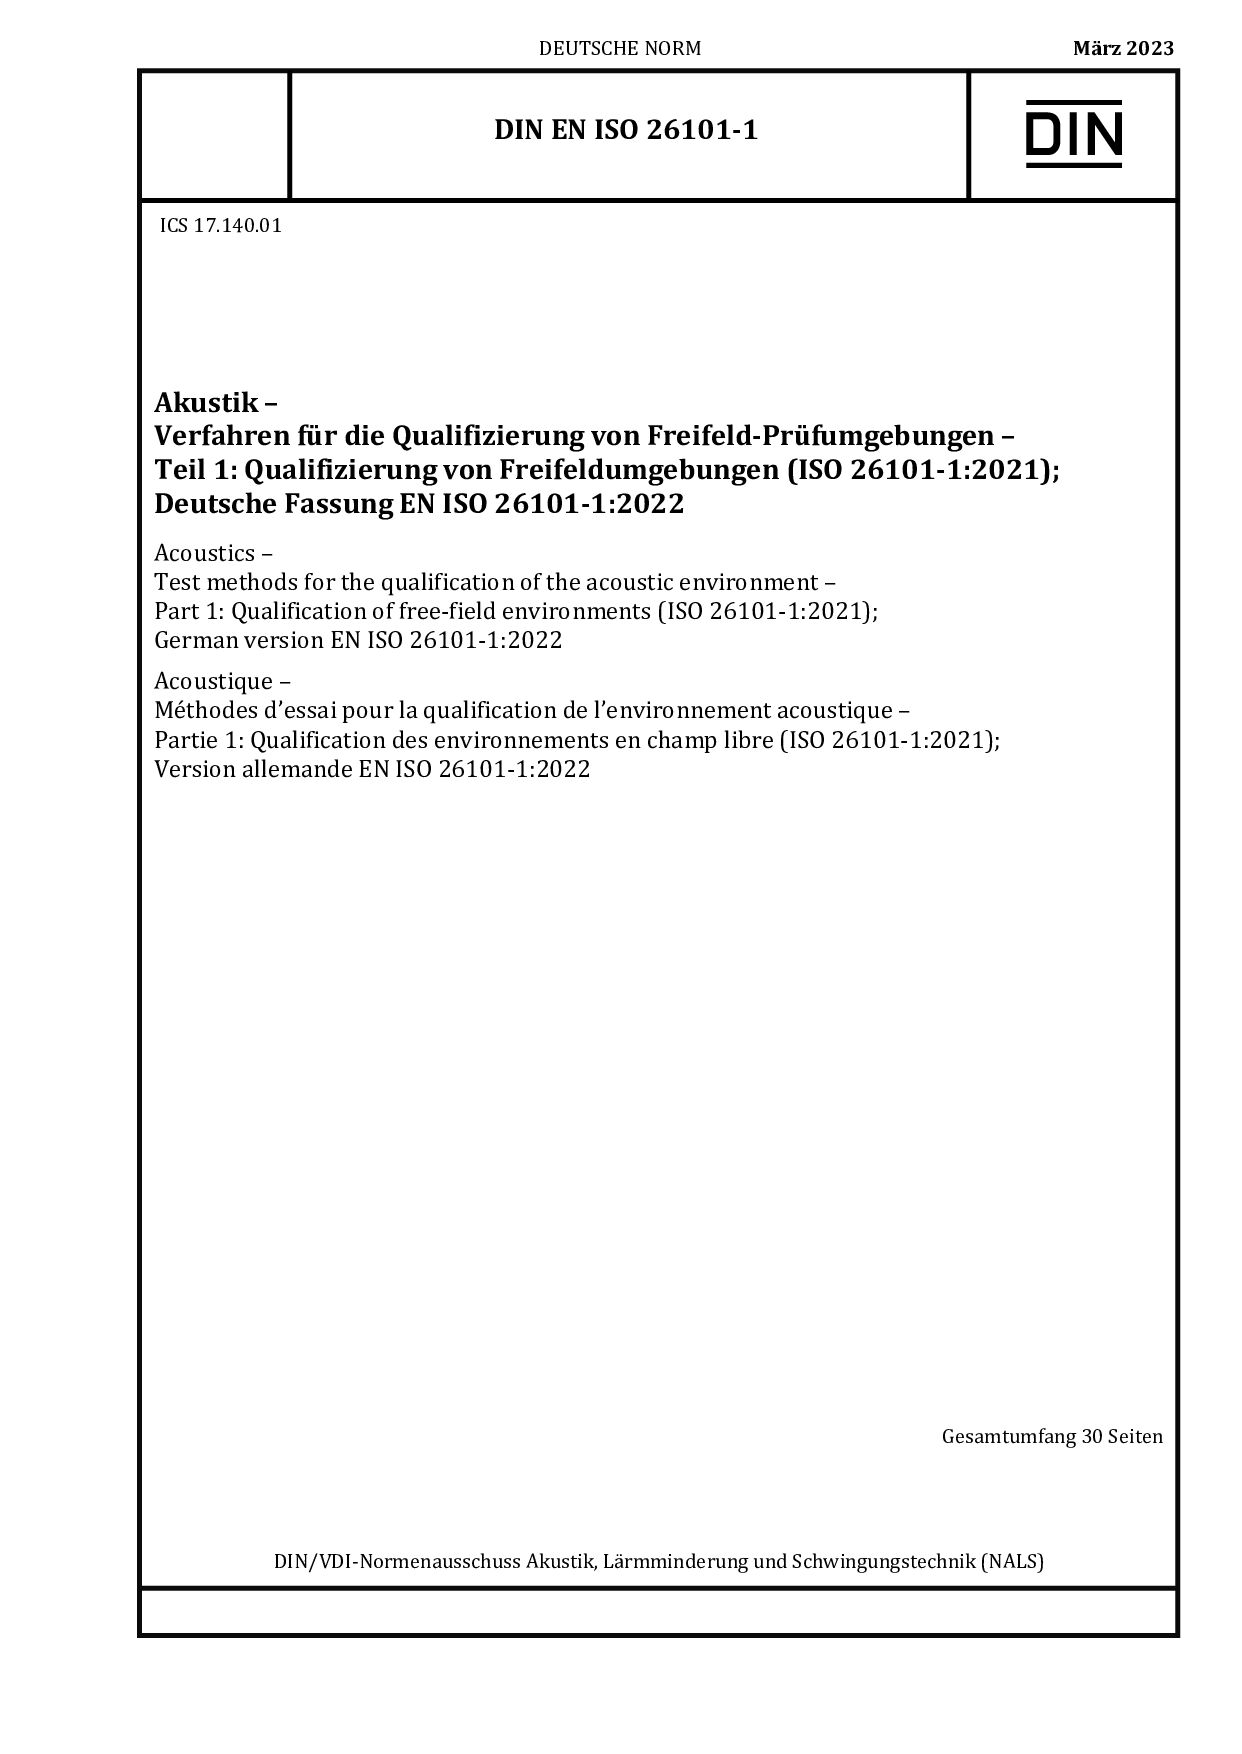 DIN EN ISO 26101-1:2023封面图